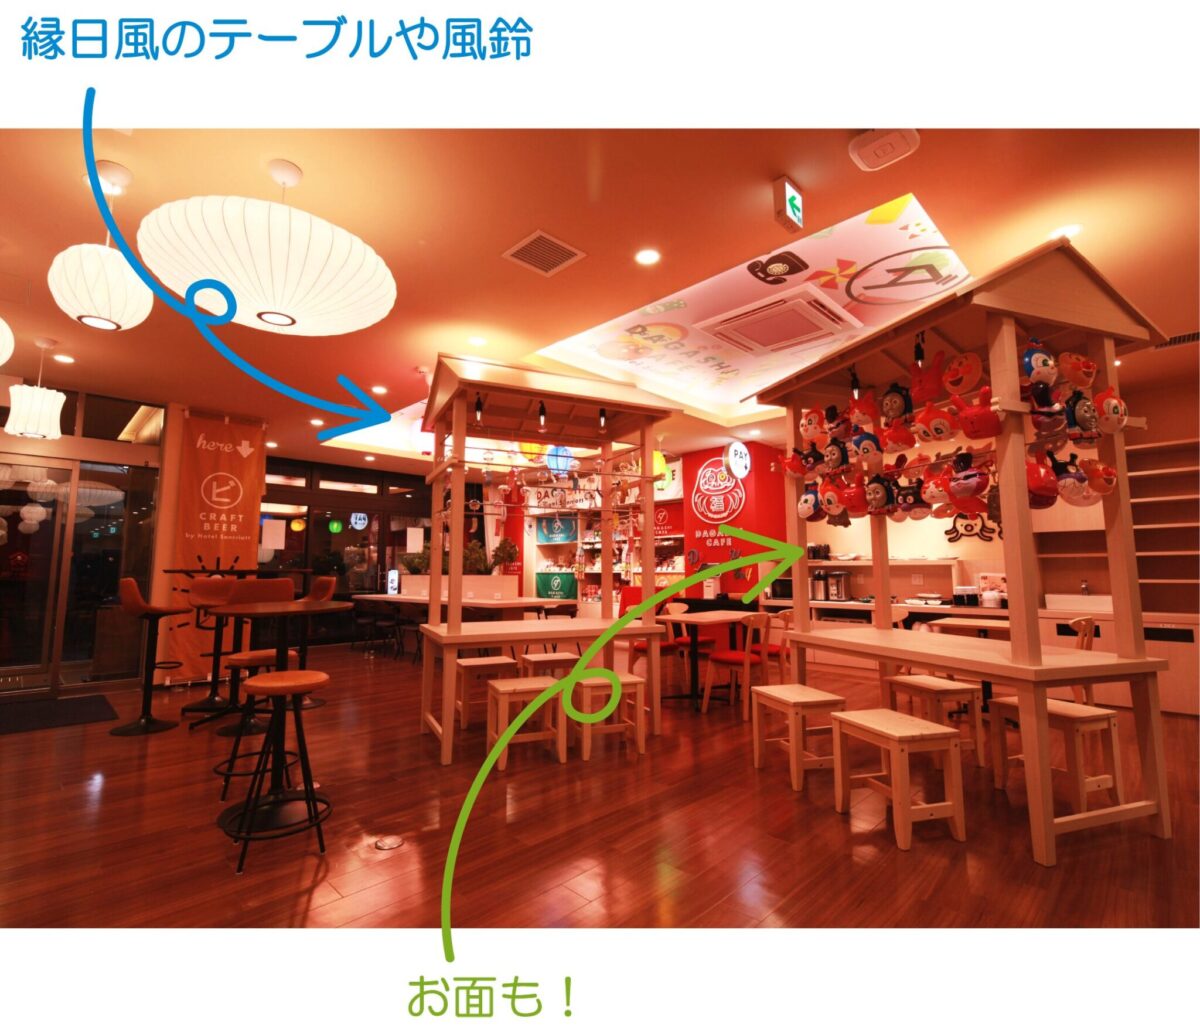 ホテルサンリオット心斎橋『DAGASHI CAFE』メディアやSNSで話題！！